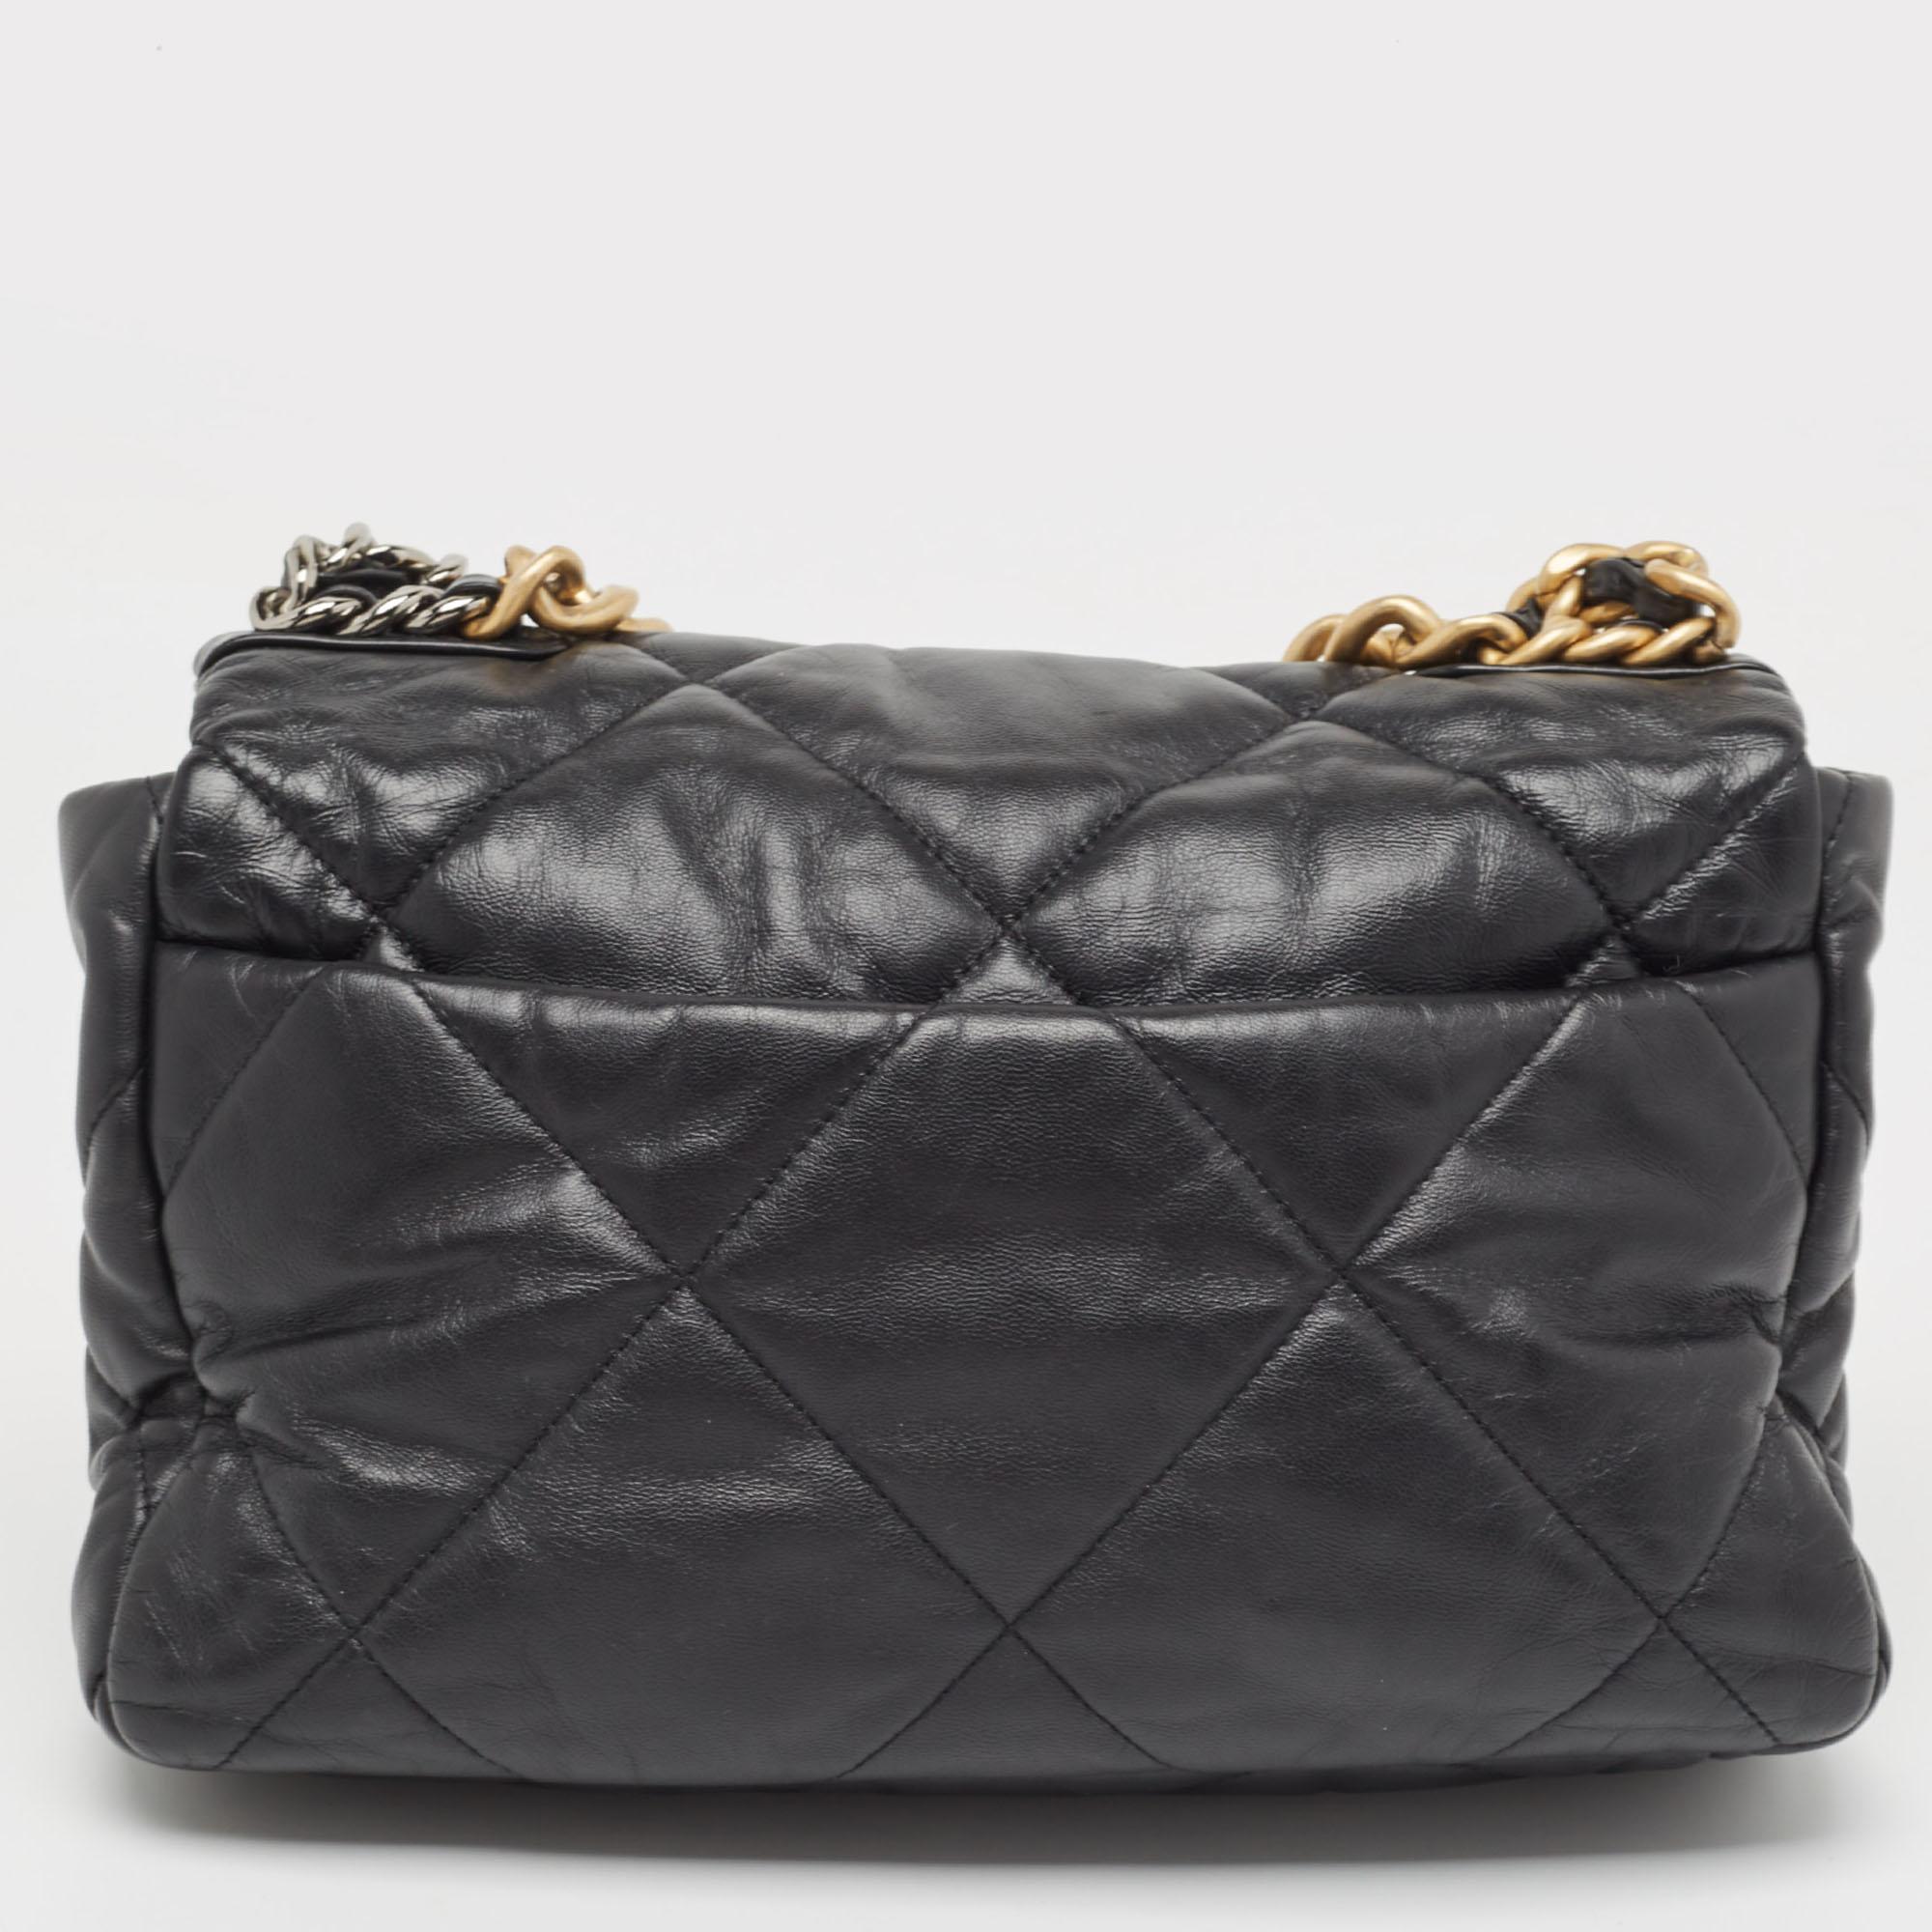 La maison Chanel propose ce magnifique sac à rabat 19 en noir pour vous aider à créer des éditions de style intemporelles chaque saison. Fabriquée avec des matériaux de qualité, cette pièce vous durera longtemps.

Comprend : Sac à poussière